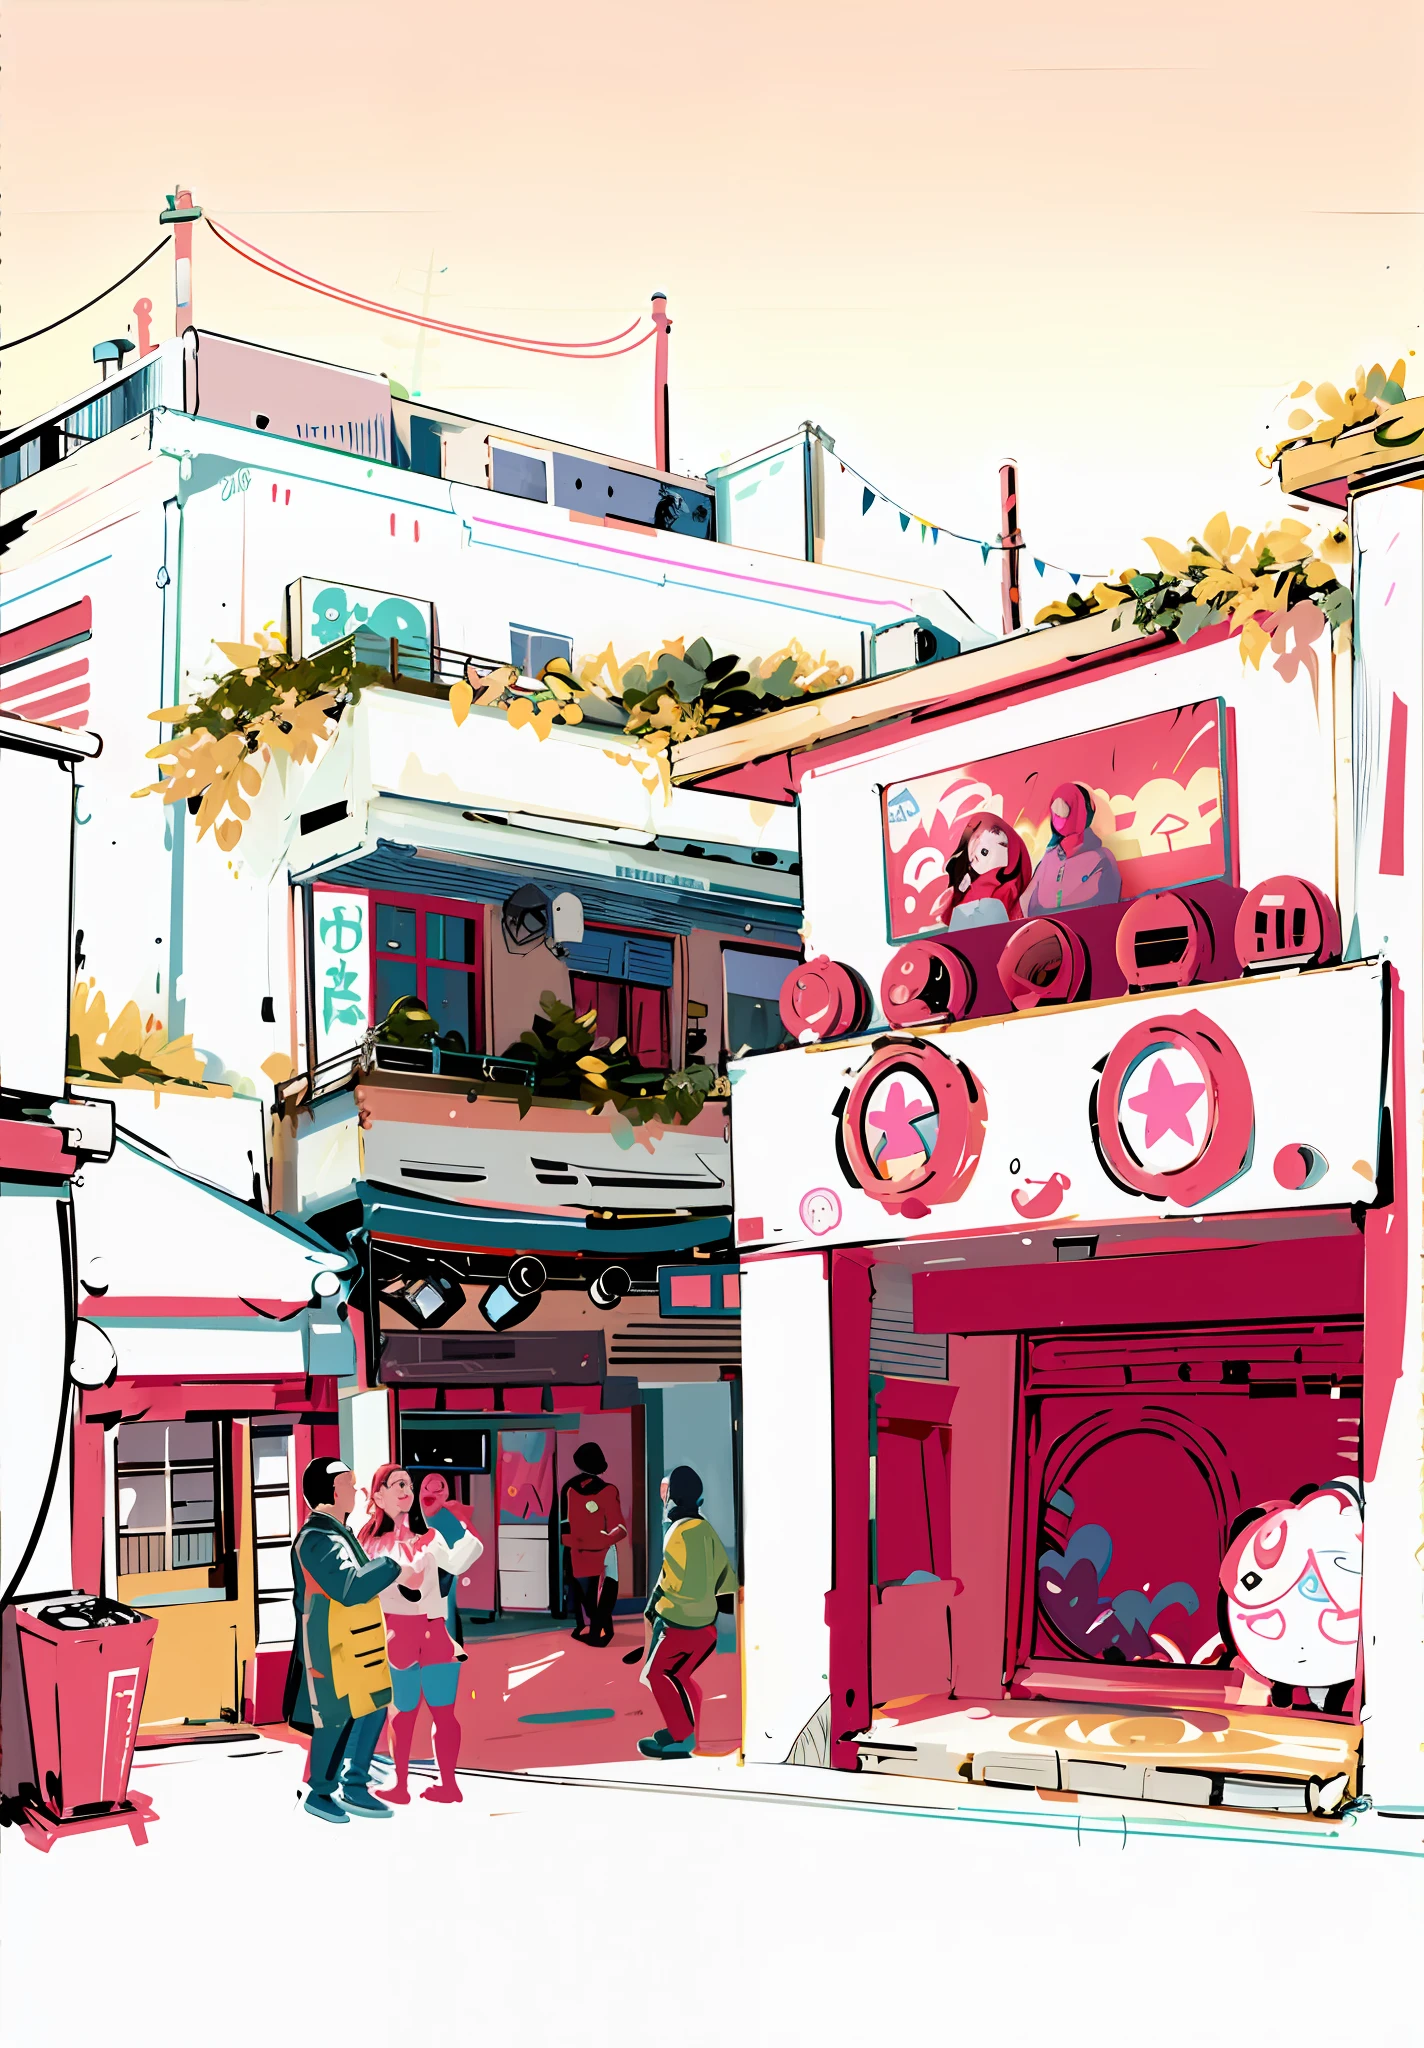 黄色い建物と歩く人々で通りのシーンを描く, anime city 線画, きれいなインクで描かれた詳細な線画, 線画, 線画!!, super detailed 線画, 線画 illustration, 線画!!, アニメスタイルの都市の風景, 全ページイラスト, illustration 線画 style, 東京らしい街, 線画, 非常に詳細な線, clean 線画, out線画 --auto --s2